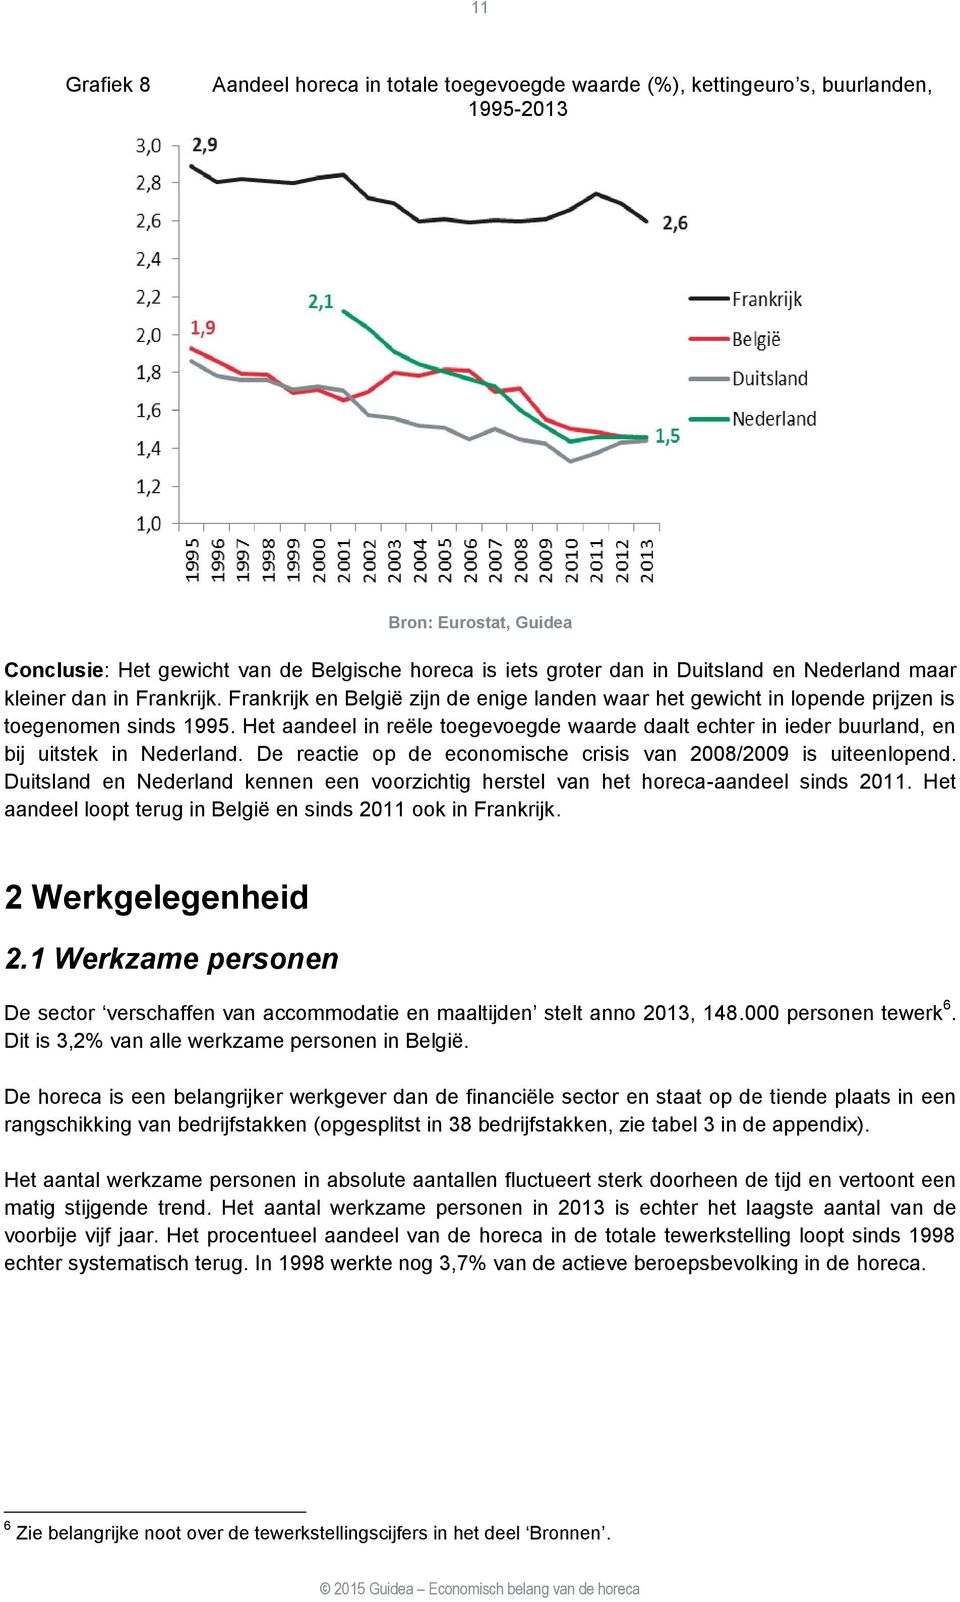 Het aandeel in reële toegevoegde waarde daalt echter in ieder buurland, en bij uitstek in Nederland. De reactie op de economische crisis van 2008/2009 is uiteenlopend.